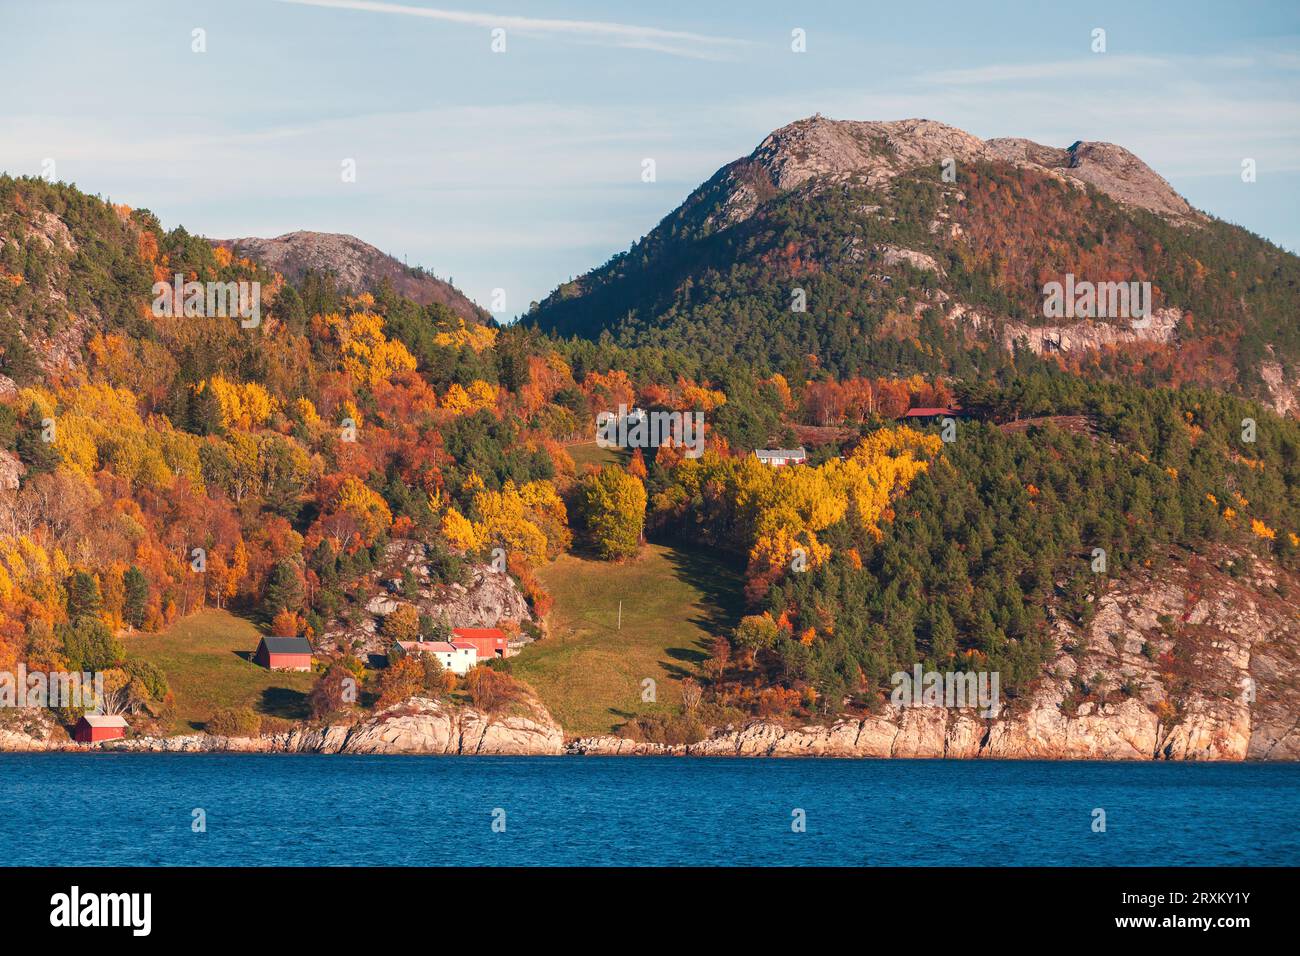 Paysage d'automne norvégien avec des maisons en bois et des arbres sur une côte rocheuse d'un fjord Banque D'Images